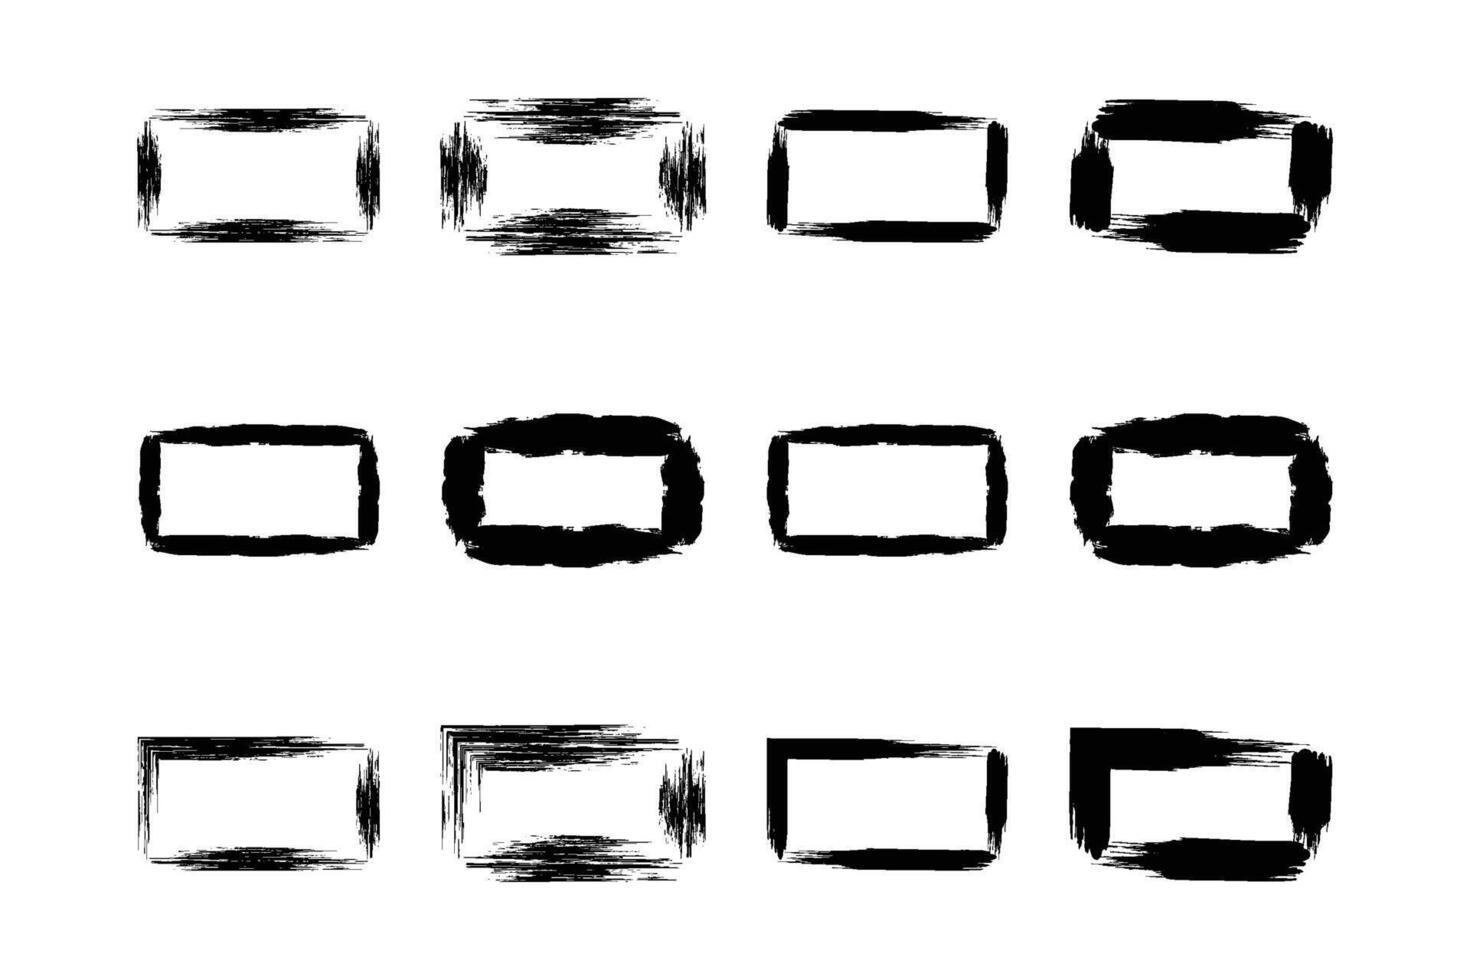 rectángulo forma negrita línea grunge forma cepillo carrera pictograma símbolo visual ilustración conjunto vector